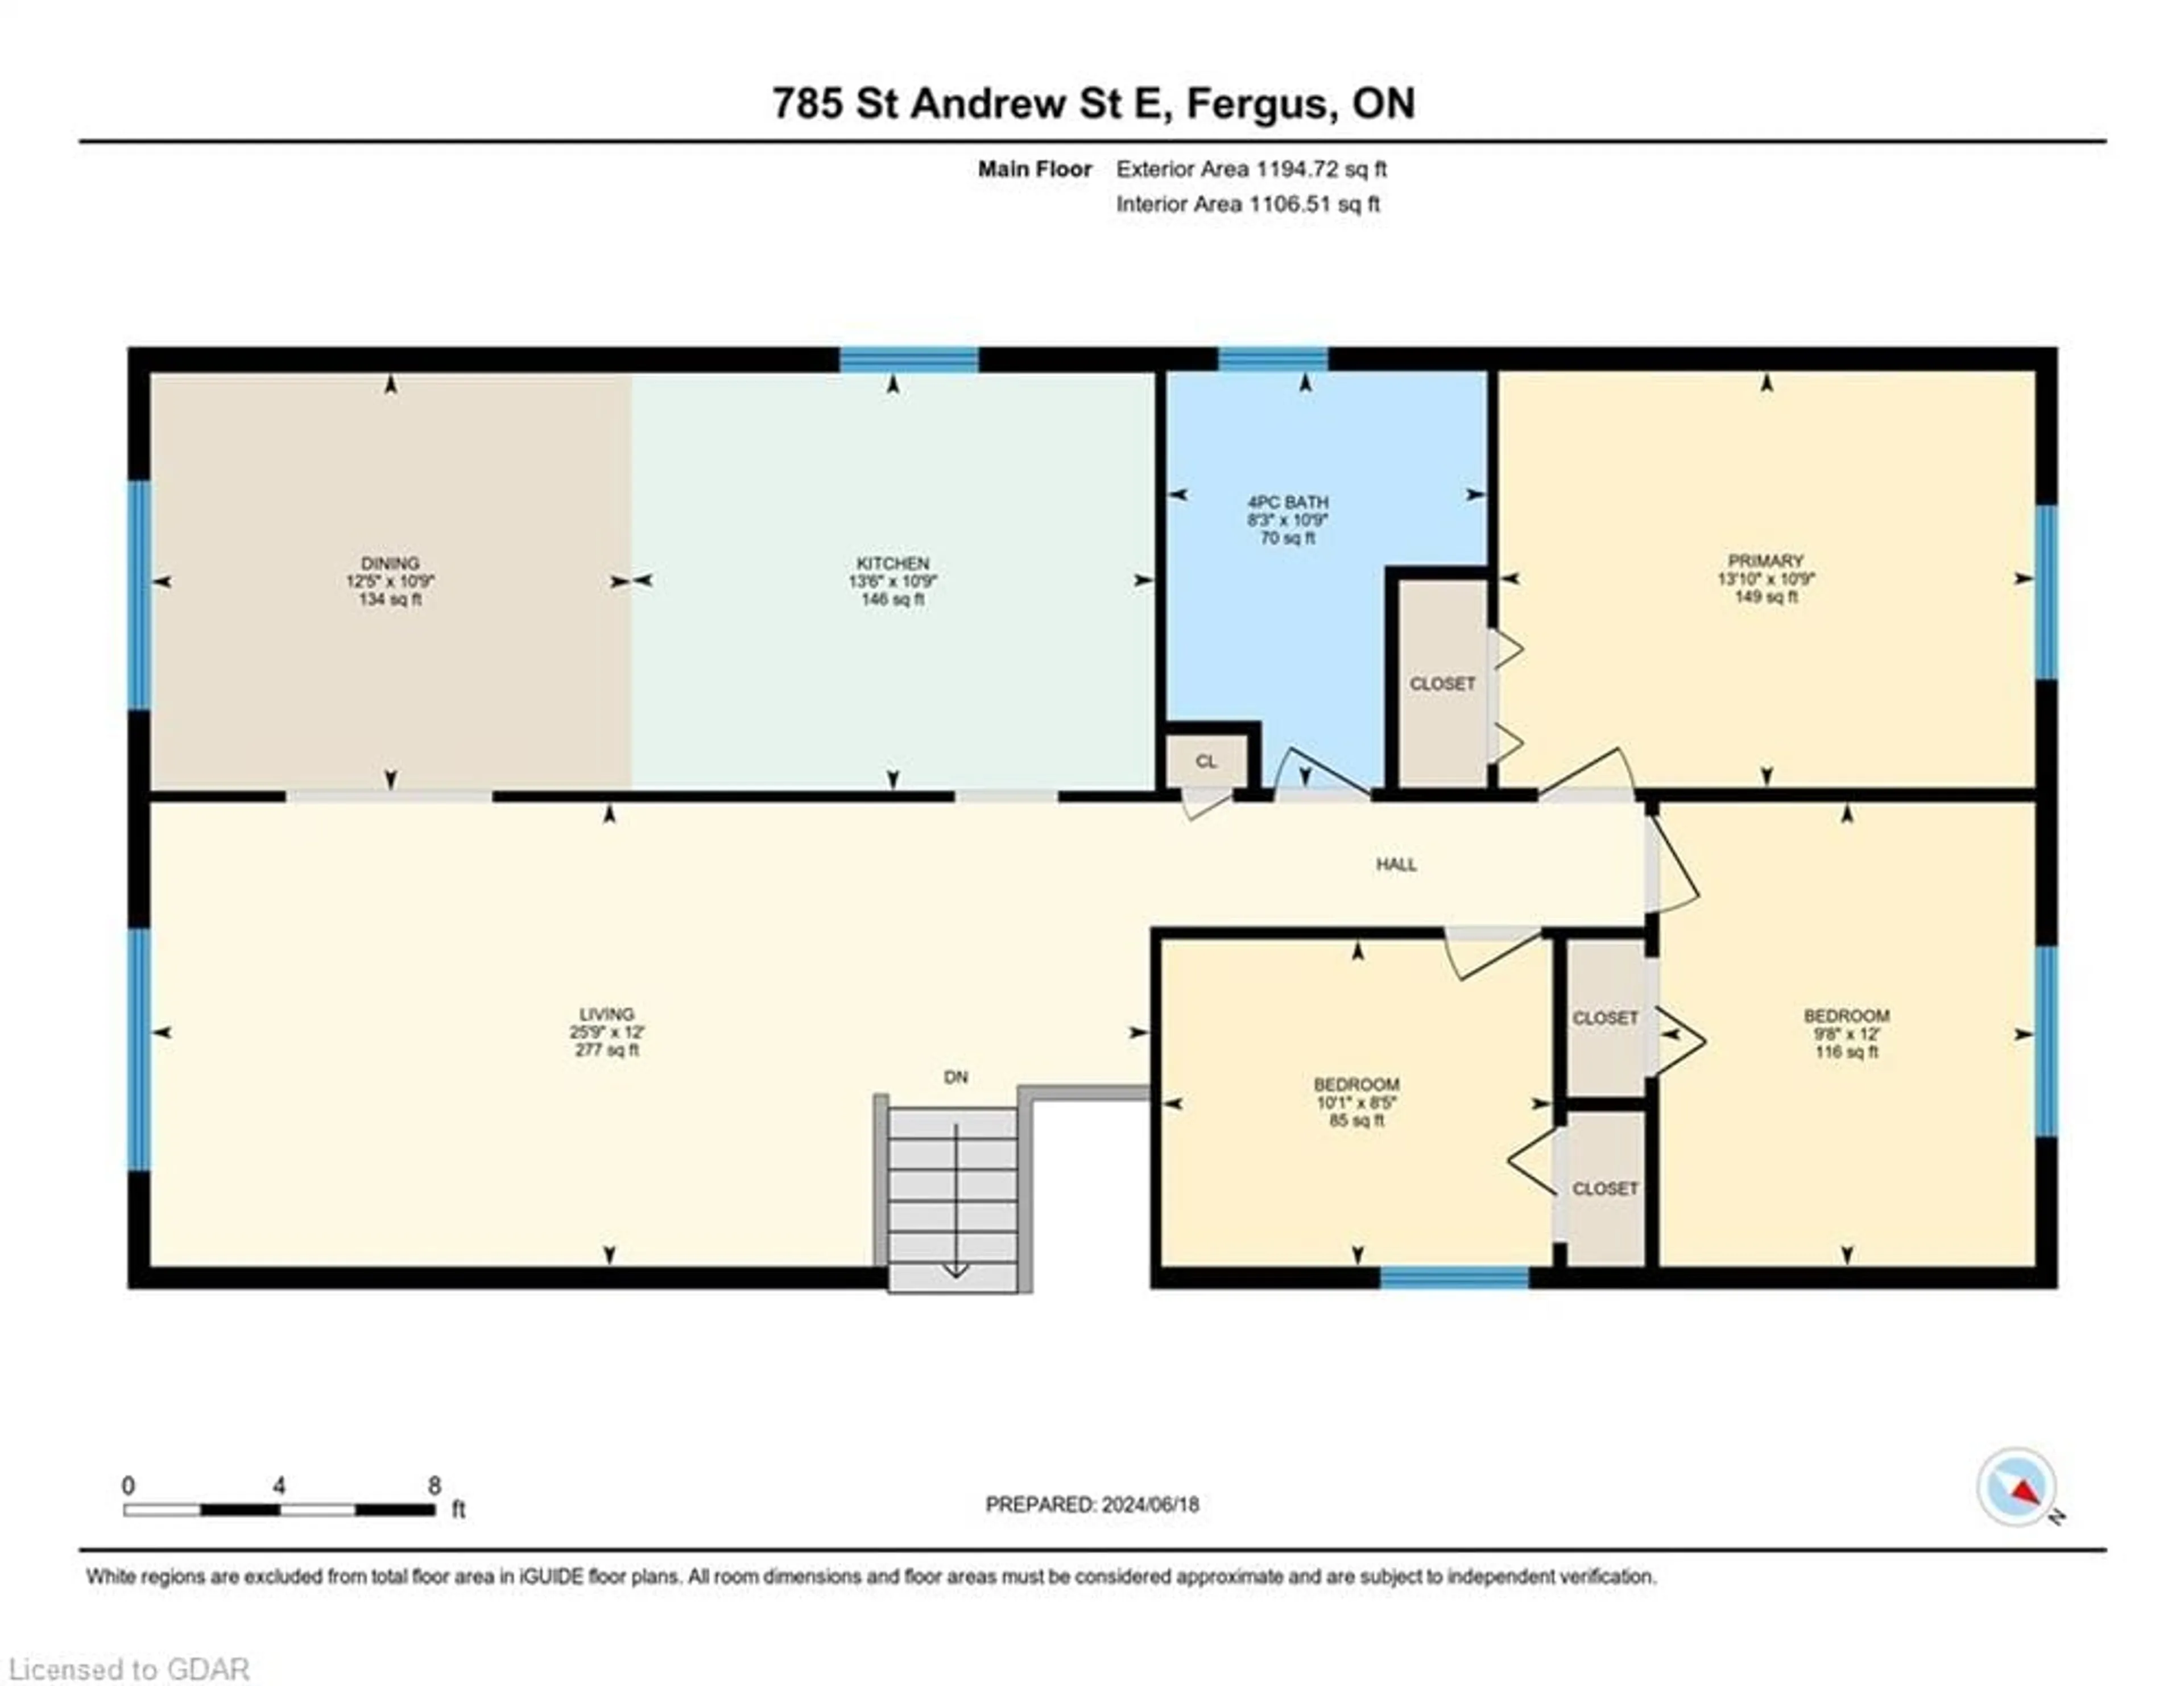 Floor plan for 785 St Andrew St, Fergus Ontario N1M 1R9